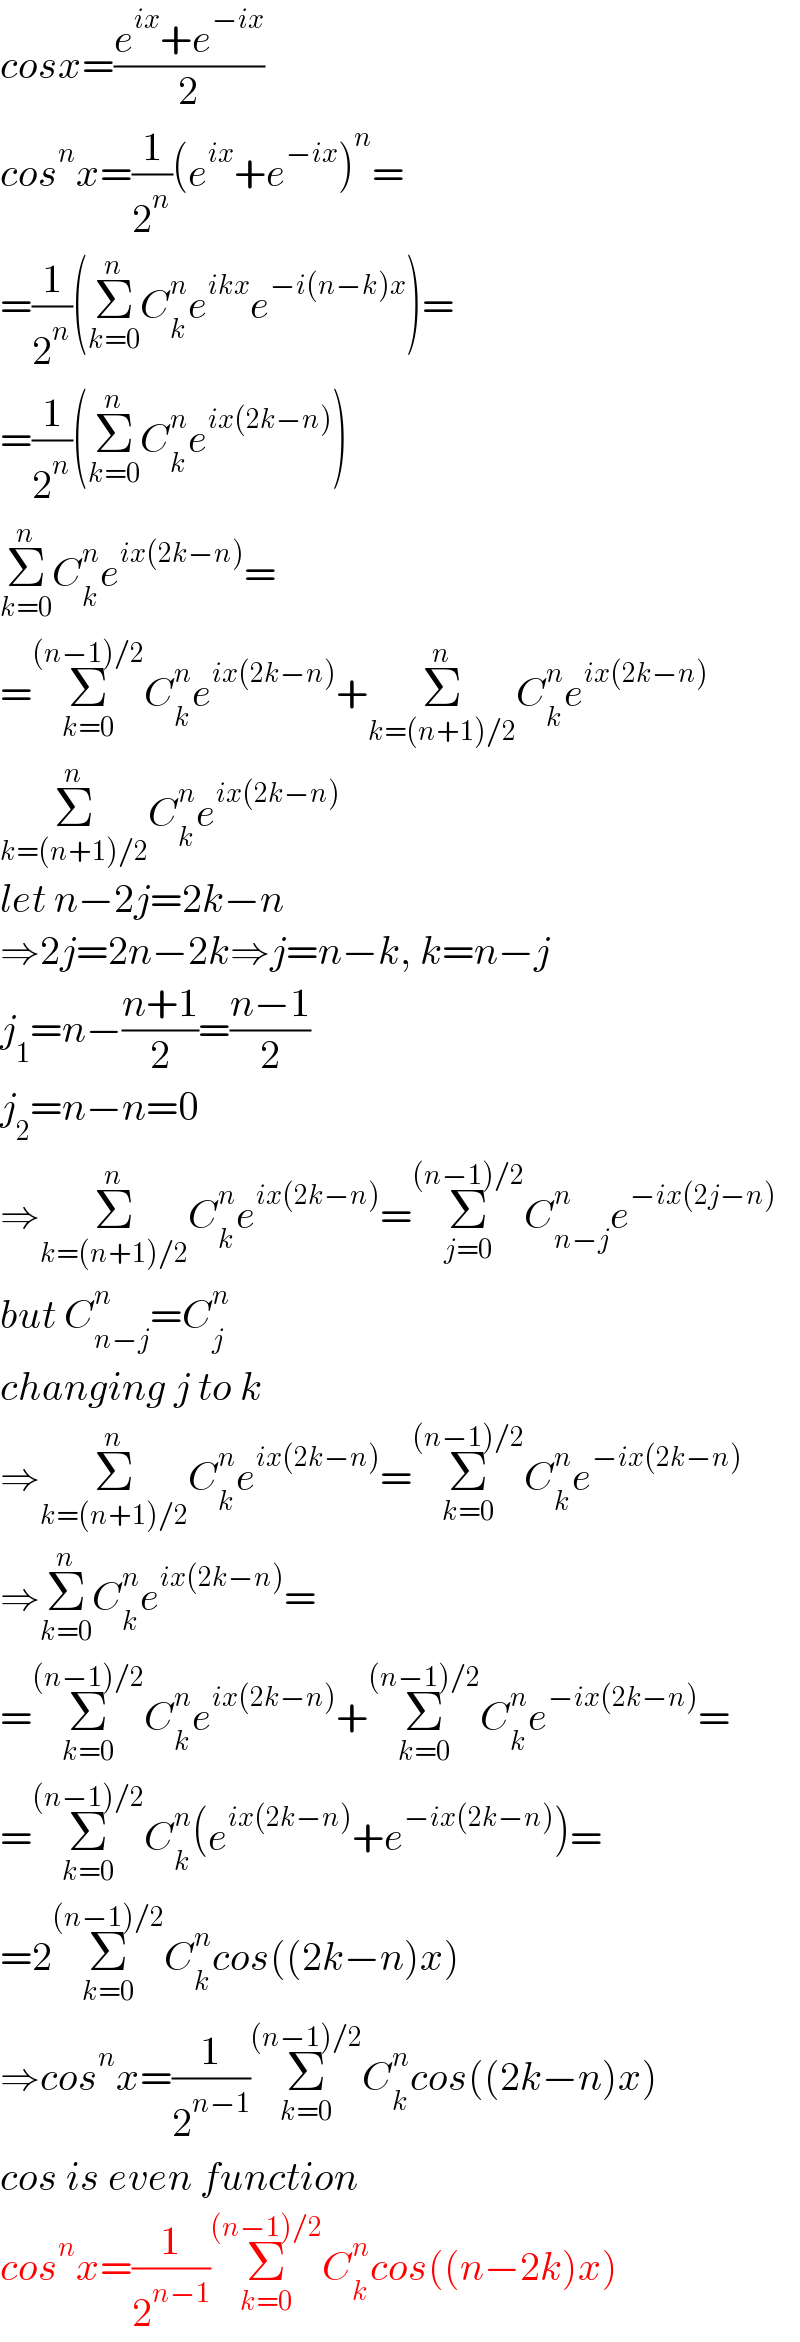 cosx=((e^(ix) +e^(−ix) )/2)  cos^n x=(1/2^n )(e^(ix) +e^(−ix) )^n =  =(1/2^n )(Σ_(k=0) ^n C_k ^n e^(ikx) e^(−i(n−k)x) )=  =(1/2^n )(Σ_(k=0) ^n C_k ^n e^(ix(2k−n)) )  Σ_(k=0) ^n C_k ^n e^(ix(2k−n)) =  =Σ_(k=0) ^((n−1)/2) C_k ^n e^(ix(2k−n)) +Σ_(k=(n+1)/2) ^n C_k ^n e^(ix(2k−n))   Σ_(k=(n+1)/2) ^n C_k ^n e^(ix(2k−n))   let n−2j=2k−n  ⇒2j=2n−2k⇒j=n−k, k=n−j  j_1 =n−((n+1)/2)=((n−1)/2)  j_2 =n−n=0  ⇒Σ_(k=(n+1)/2) ^n C_k ^n e^(ix(2k−n)) =Σ_(j=0) ^((n−1)/2) C_(n−j) ^n e^(−ix(2j−n))   but C_(n−j) ^n =C_j ^n   changing j to k  ⇒Σ_(k=(n+1)/2) ^n C_k ^n e^(ix(2k−n)) =Σ_(k=0) ^((n−1)/2) C_k ^n e^(−ix(2k−n))   ⇒Σ_(k=0) ^n C_k ^n e^(ix(2k−n)) =  =Σ_(k=0) ^((n−1)/2) C_k ^n e^(ix(2k−n)) +Σ_(k=0) ^((n−1)/2) C_k ^n e^(−ix(2k−n)) =  =Σ_(k=0) ^((n−1)/2) C_k ^n (e^(ix(2k−n)) +e^(−ix(2k−n)) )=  =2Σ_(k=0) ^((n−1)/2) C_k ^n cos((2k−n)x)  ⇒cos^n x=(1/2^(n−1) )Σ_(k=0) ^((n−1)/2) C_k ^n cos((2k−n)x)  cos is even function  cos^n x=(1/2^(n−1) )Σ_(k=0) ^((n−1)/2) C_k ^n cos((n−2k)x)  